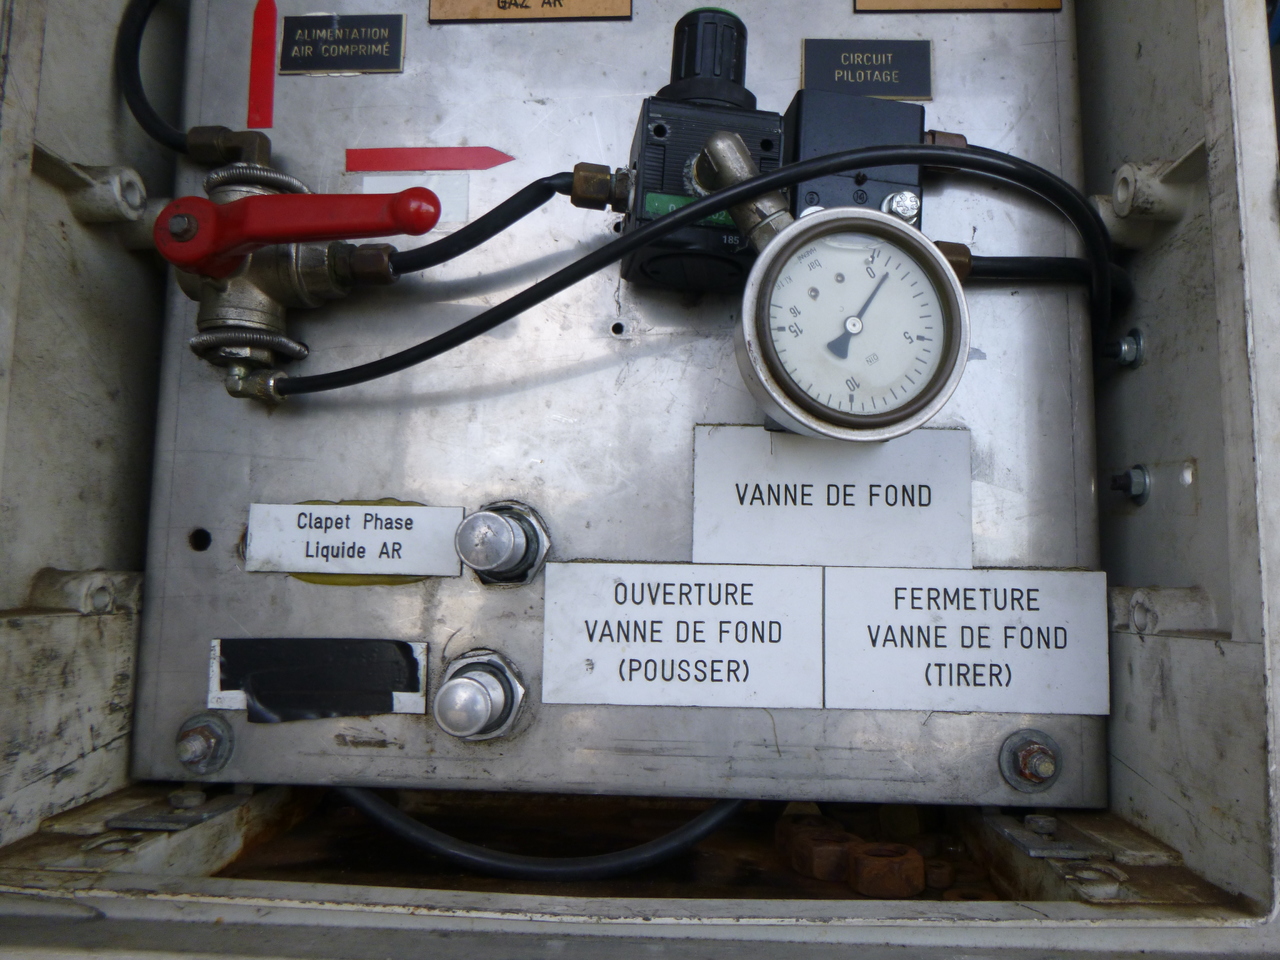 Cisterna semirremolque para transporte de gas Guhur Low-pressure gas tank steel 31.5 m3 / 10 bar (methyl chloride): foto 13